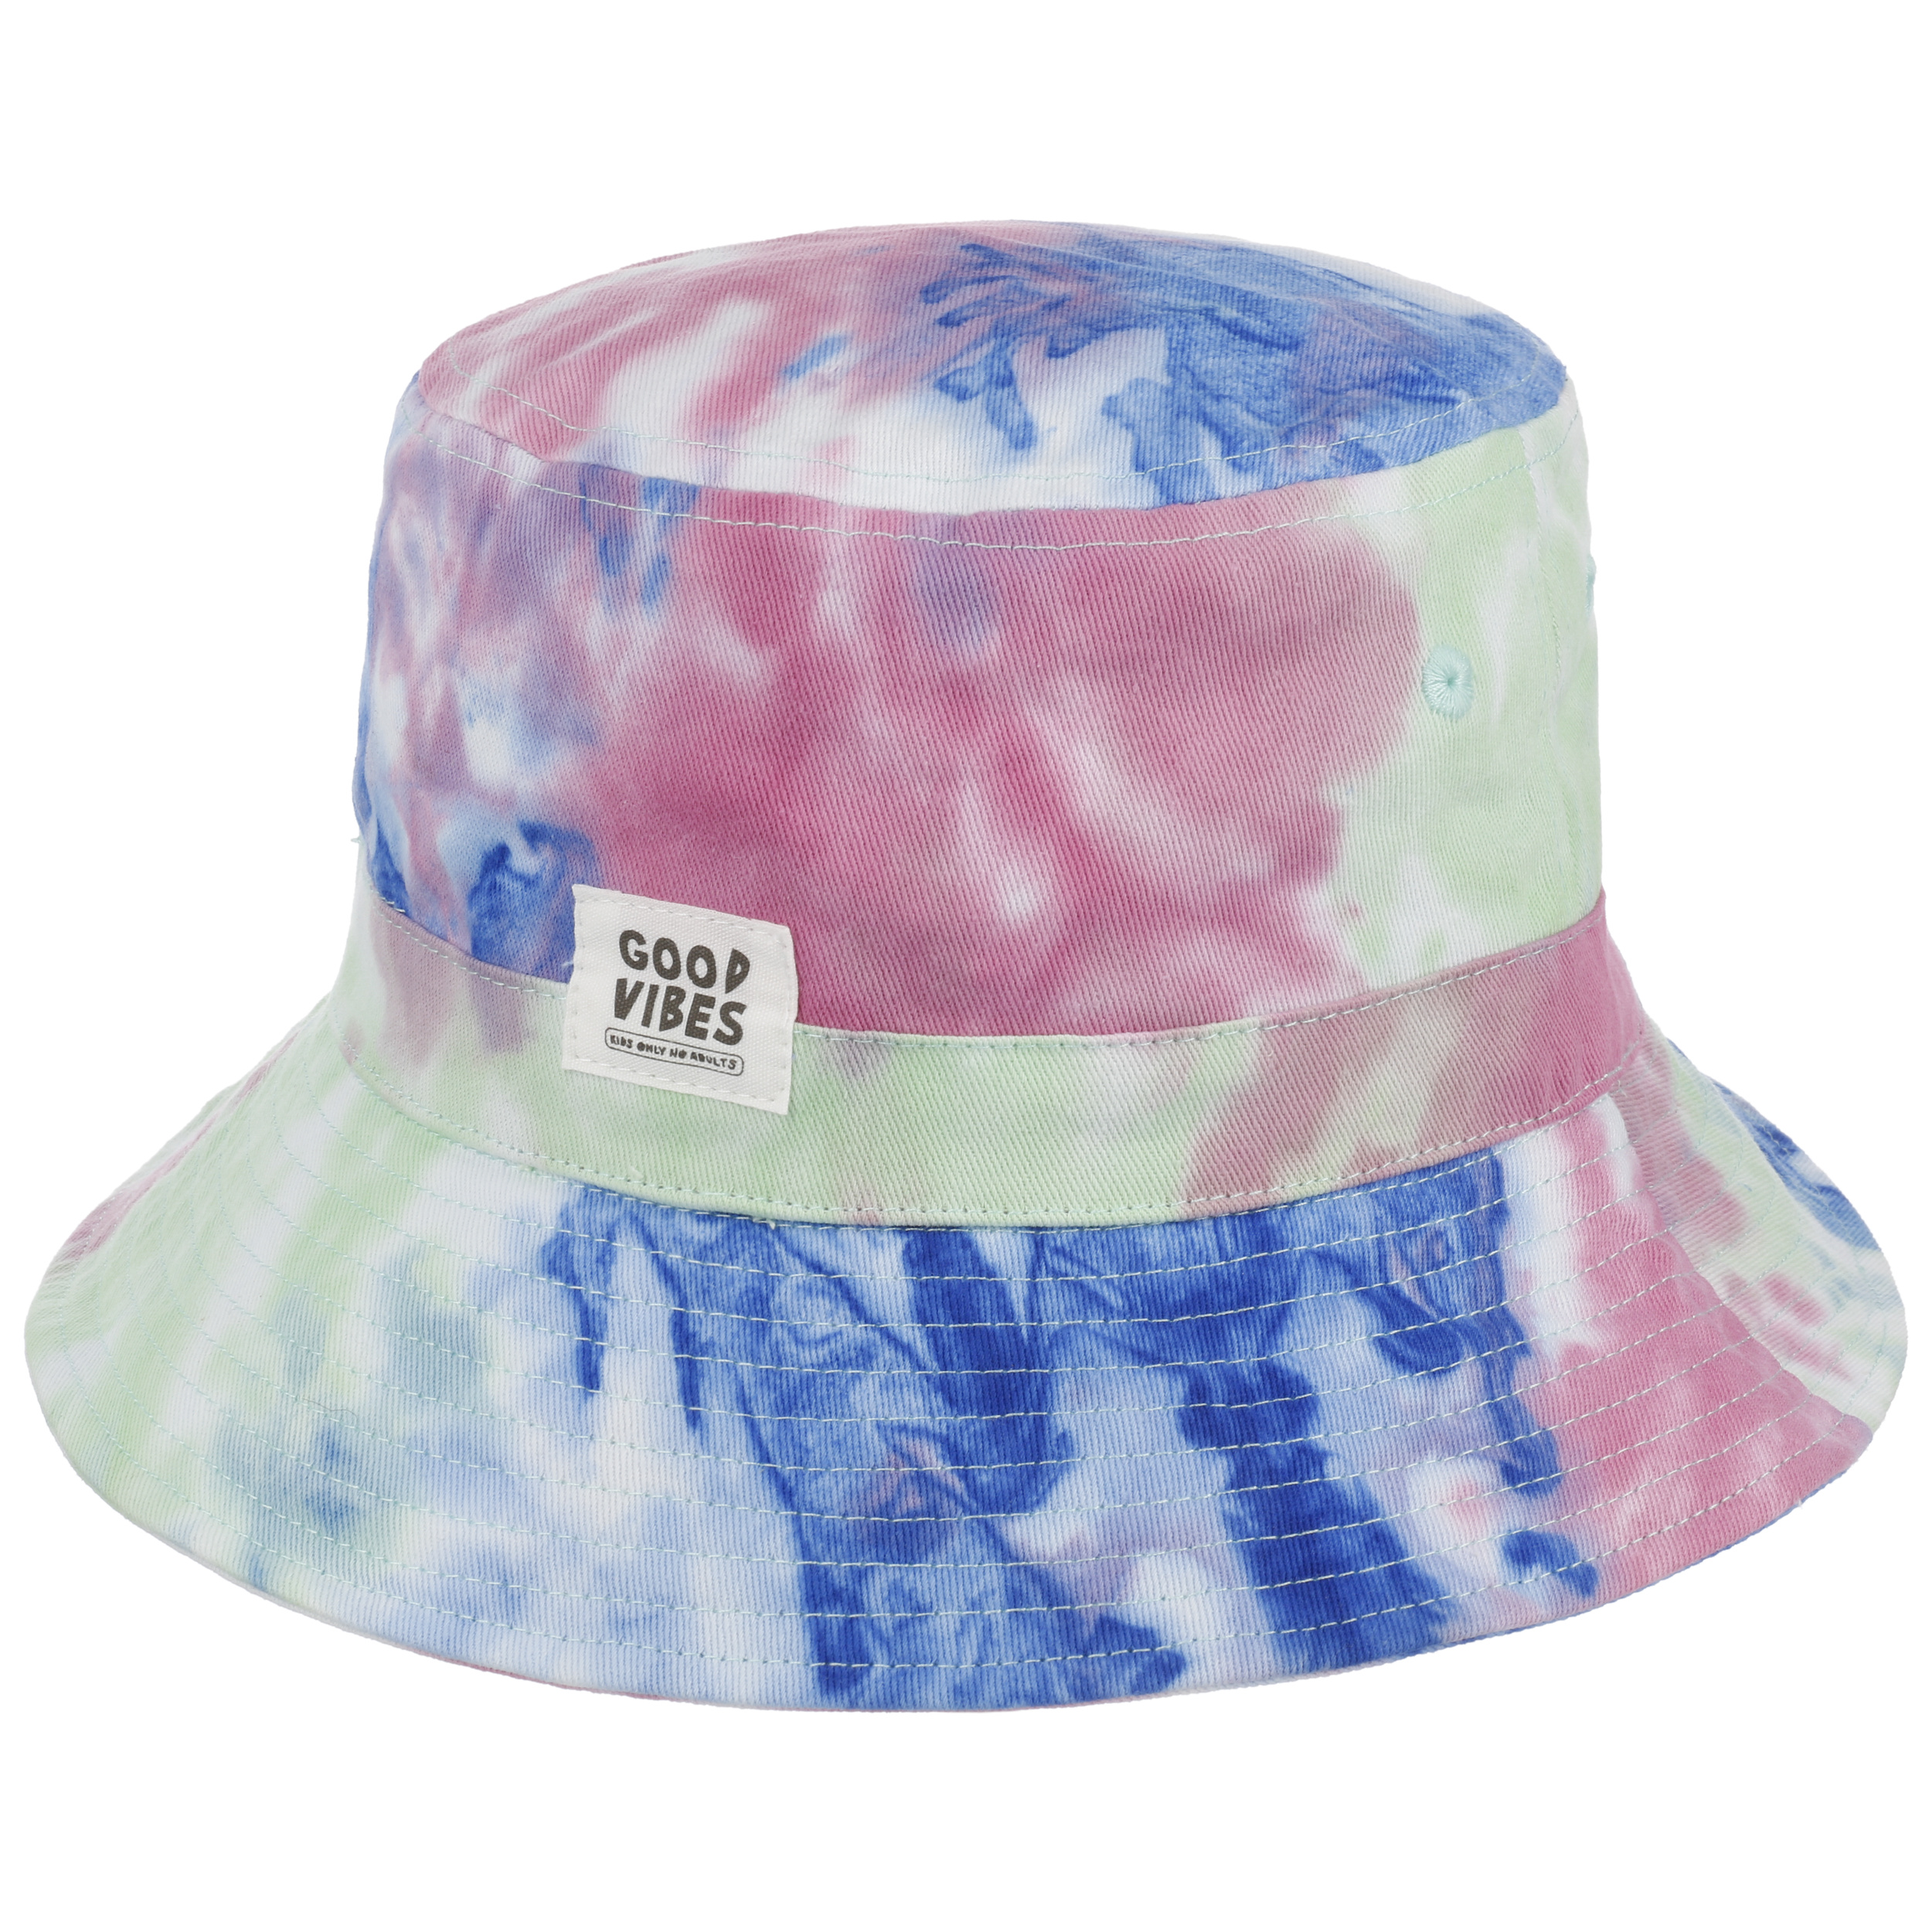 Custom Bucket Hats for Kids | Little Chicken Kids L/XL - Age 8- 12 / Pastel Multi Tie Dye